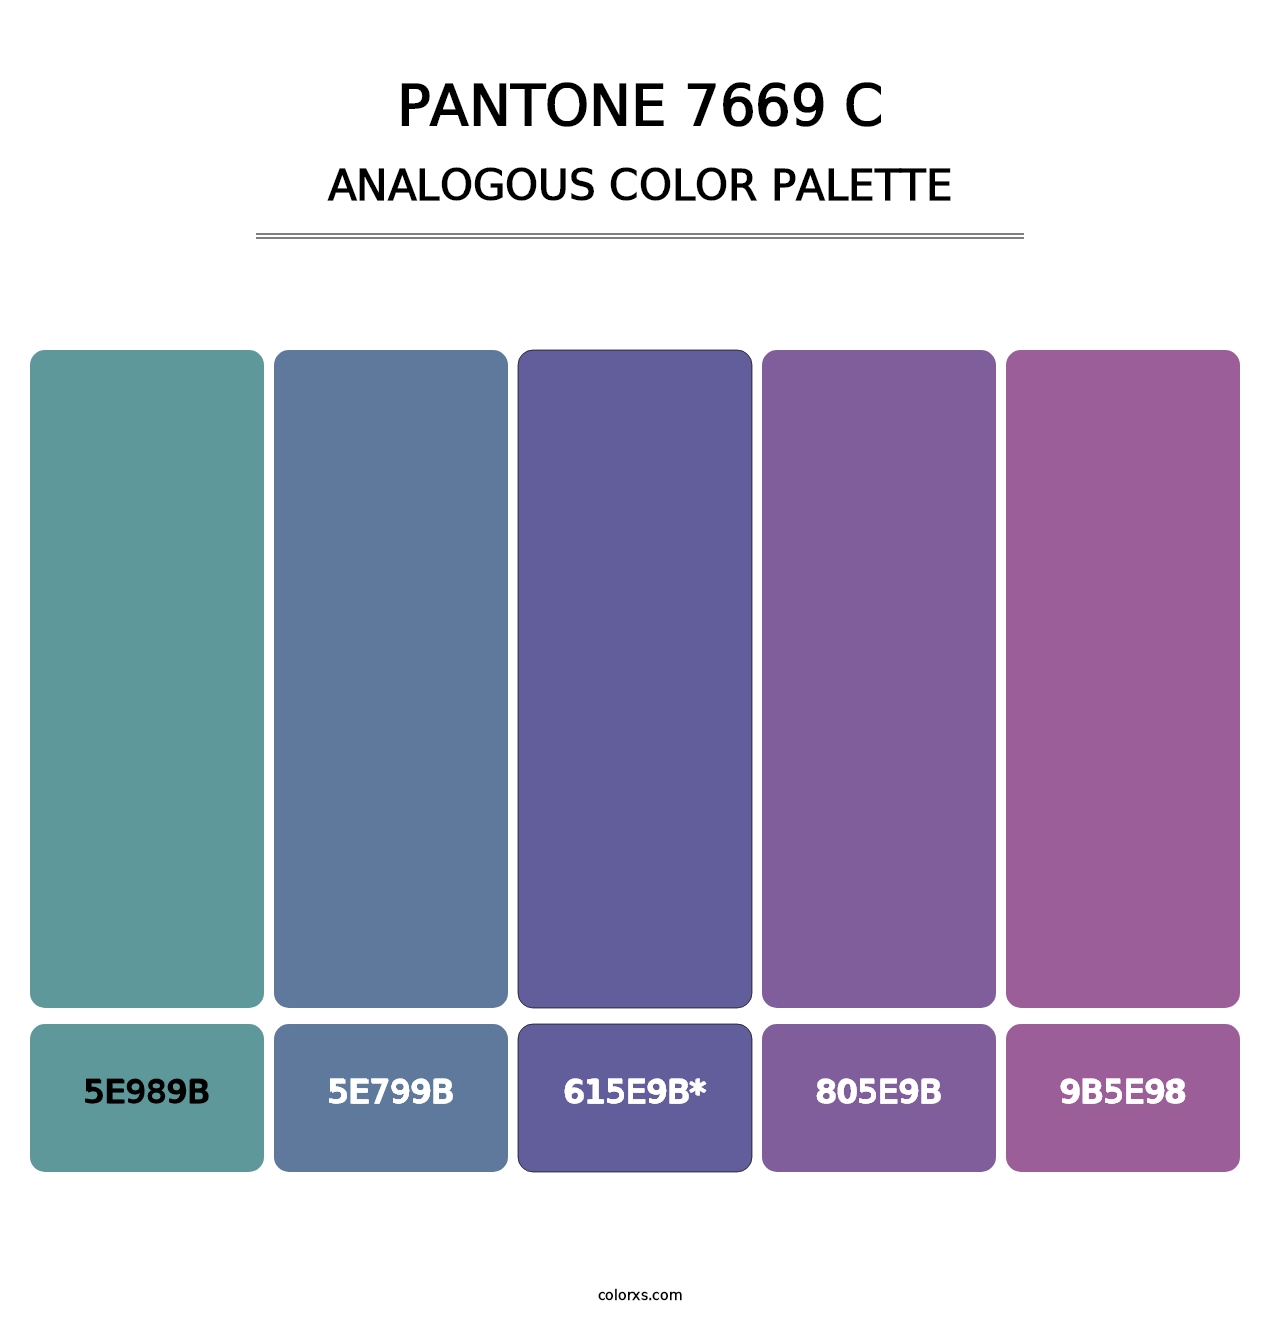 PANTONE 7669 C - Analogous Color Palette